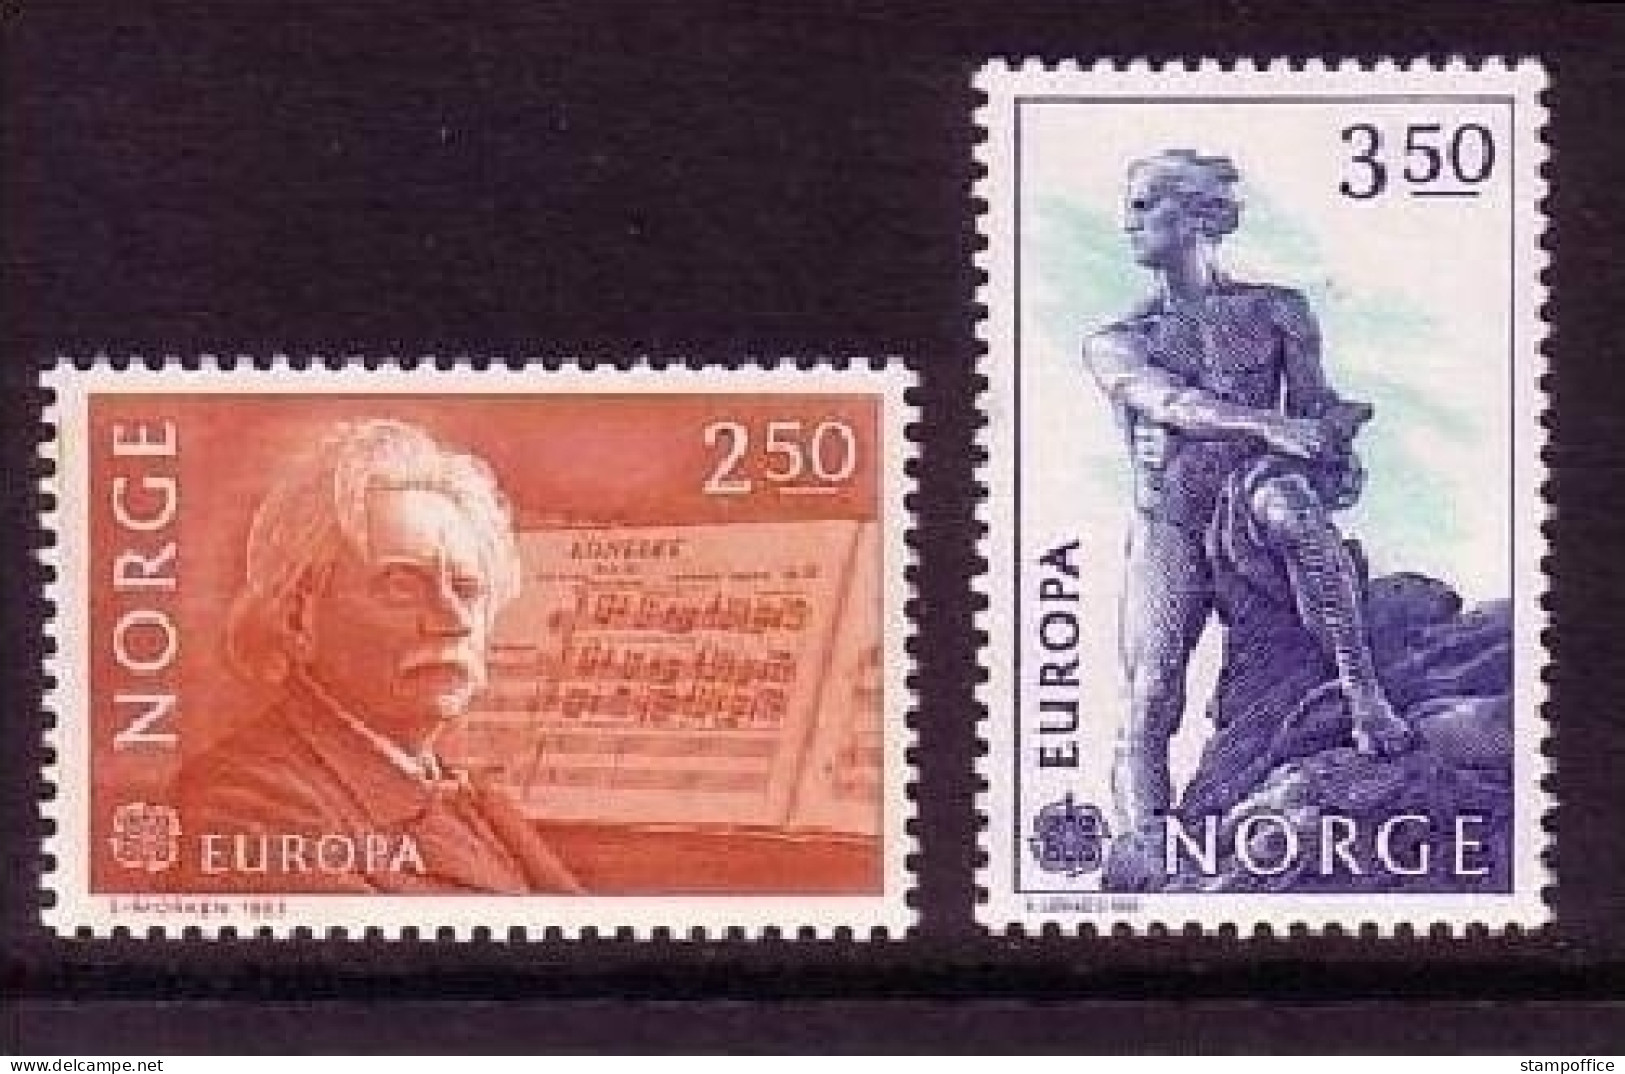 NORWEGEN MI-NR. 885-886 POSTFRISCH EUROPA 1983 GROSSE WERKE GRIEG KOMPONIST ABEL MATHEMATIKER - Unused Stamps